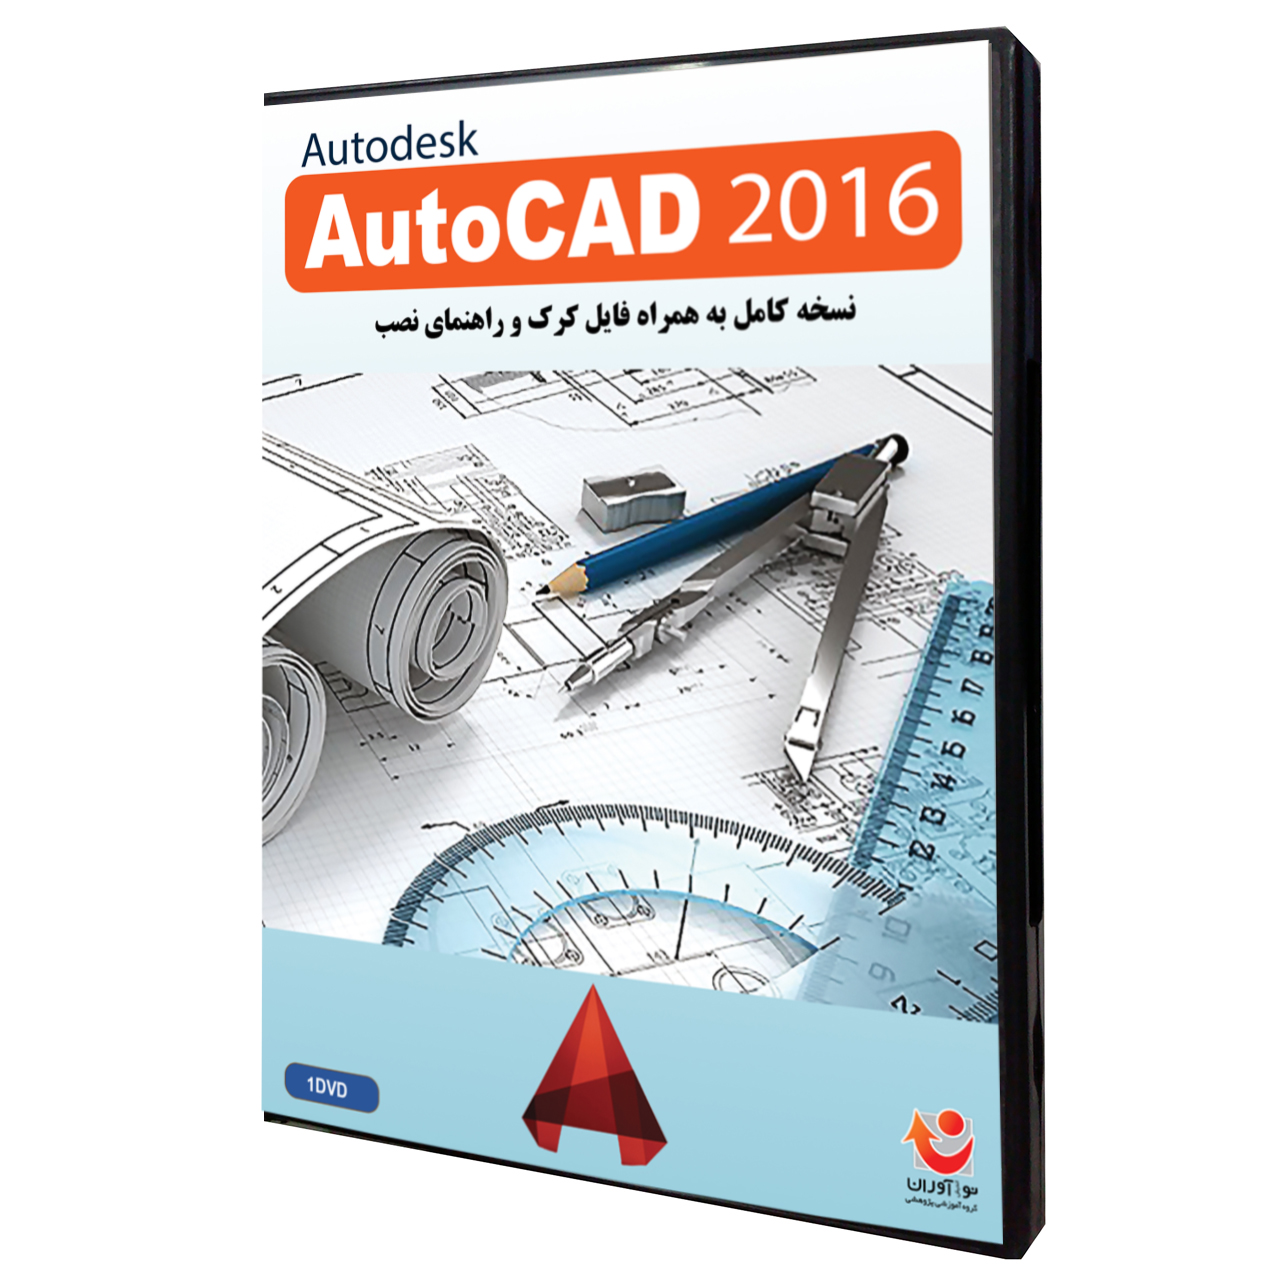  نرم افزار  Autodesk AutoCAD 2016 نشر نوآوران